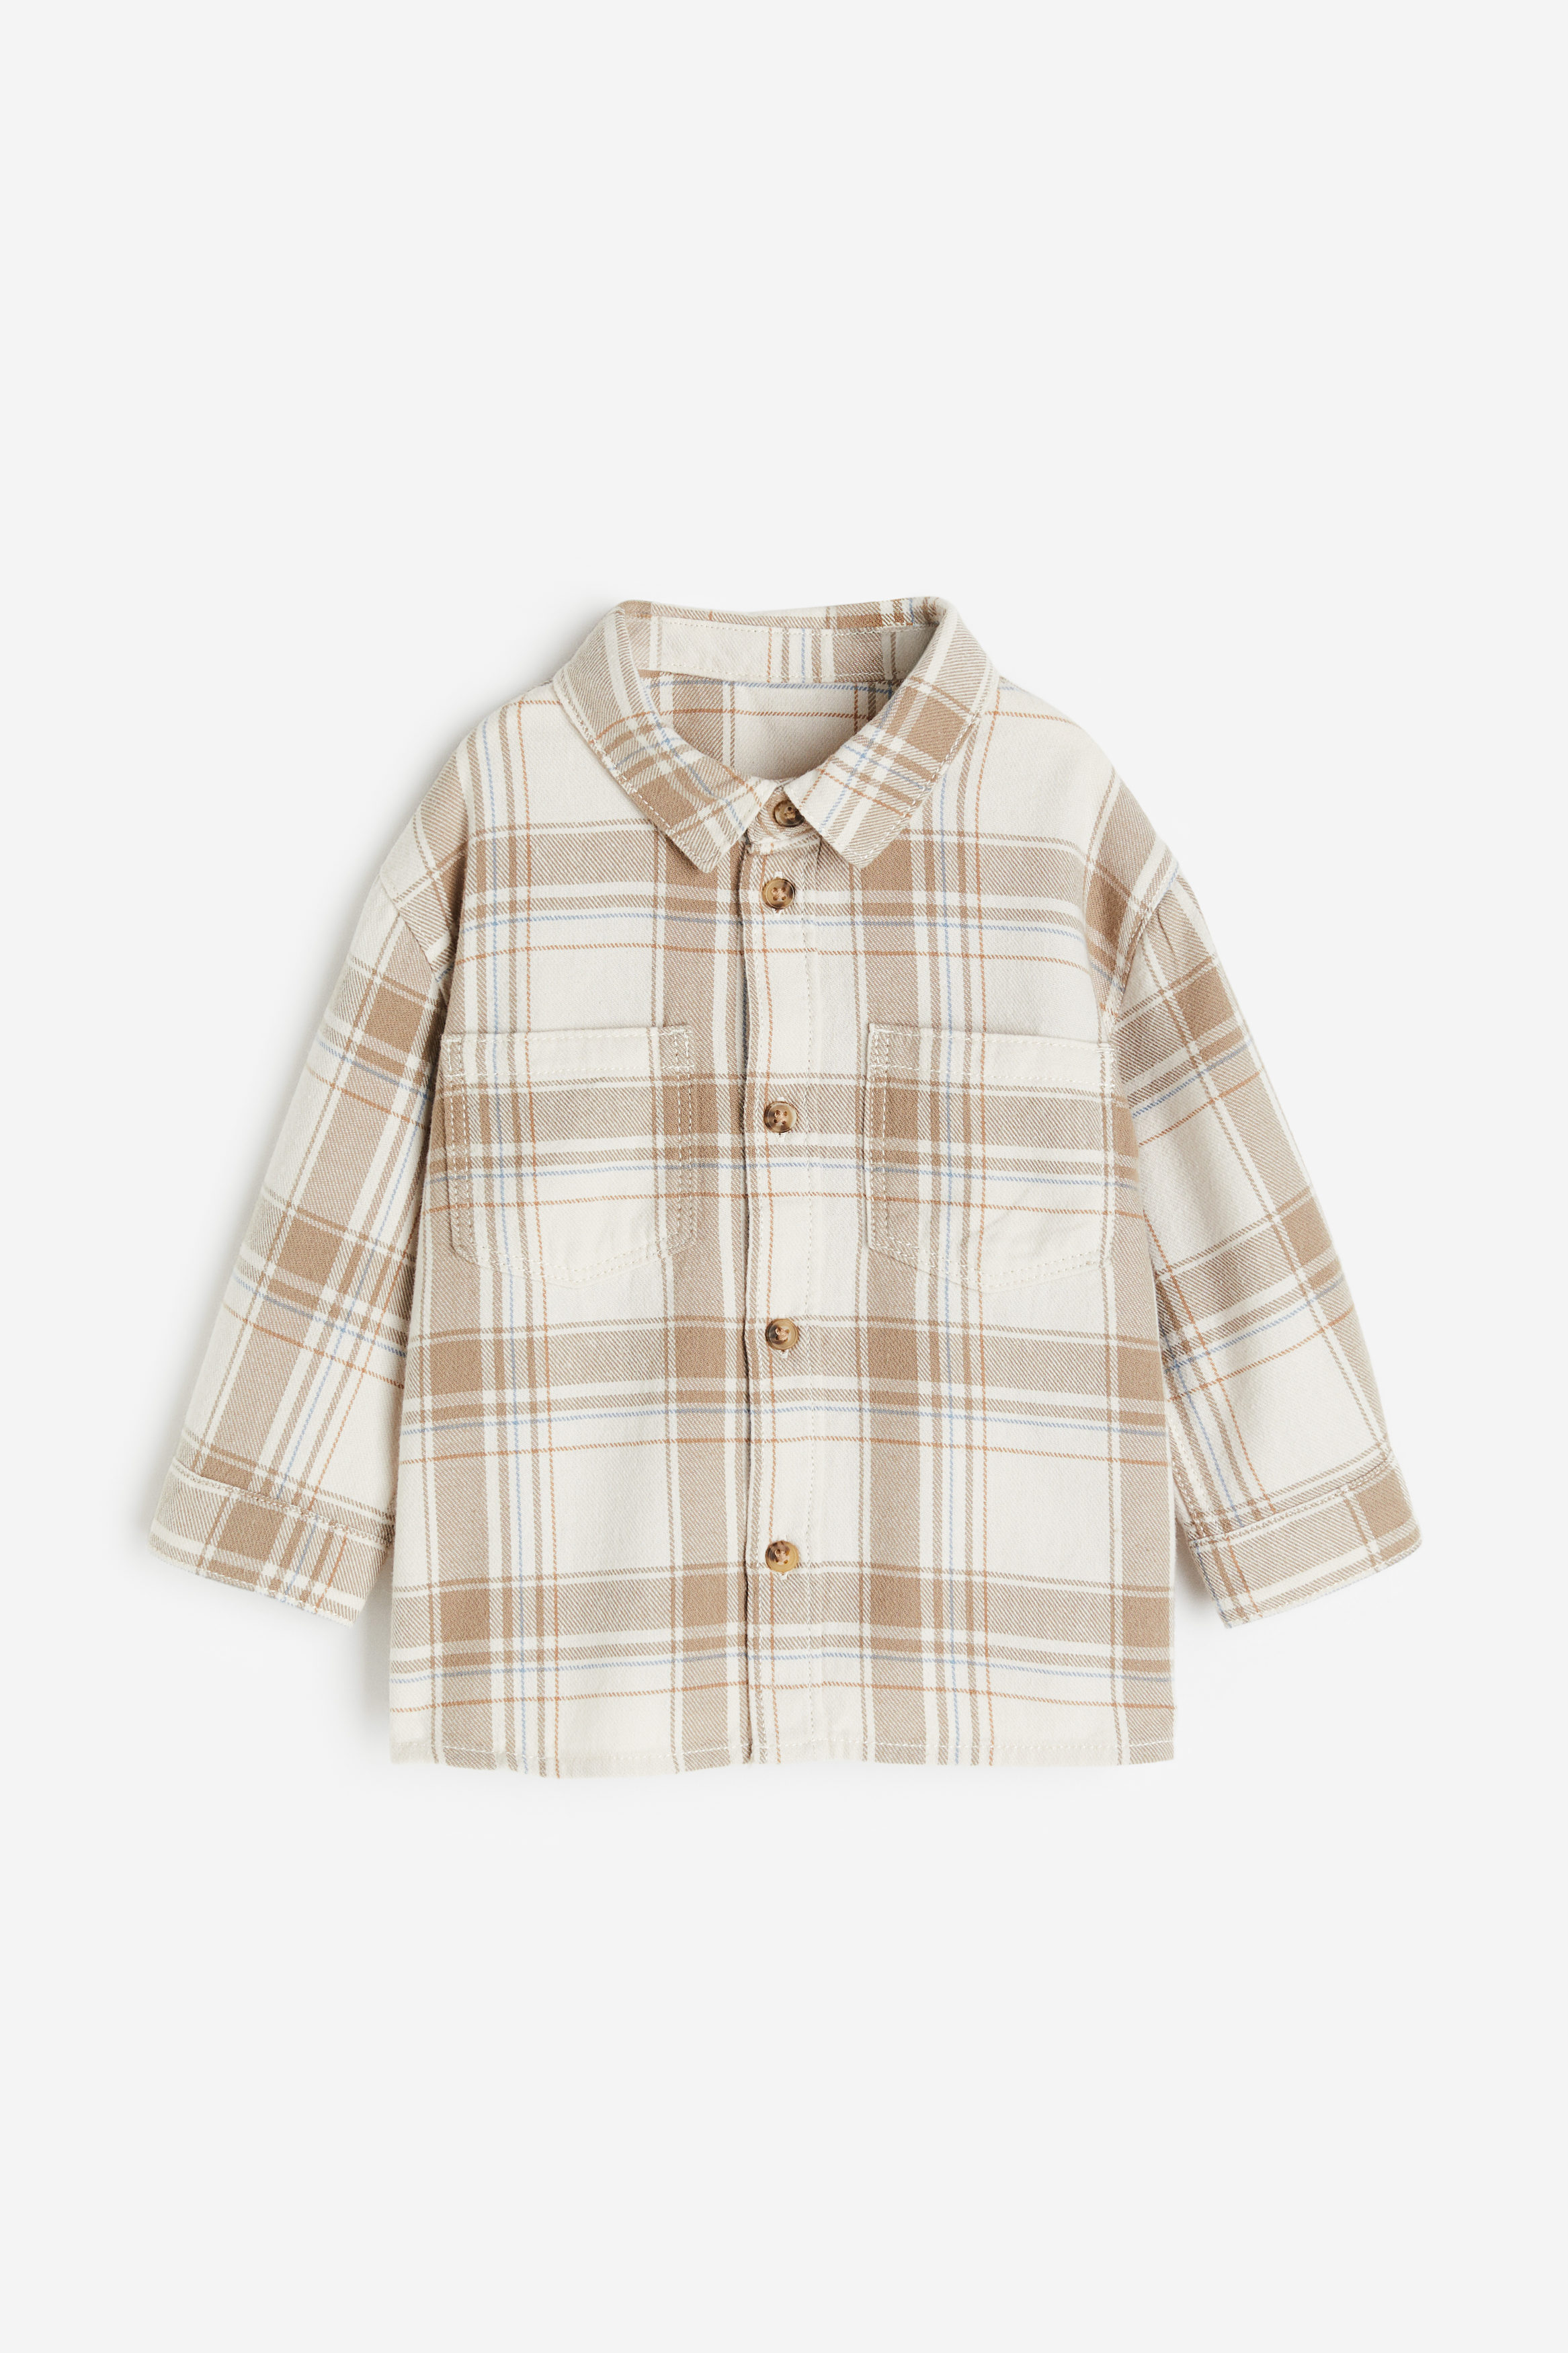 Buy Cotton flannel shirt online in Qatar